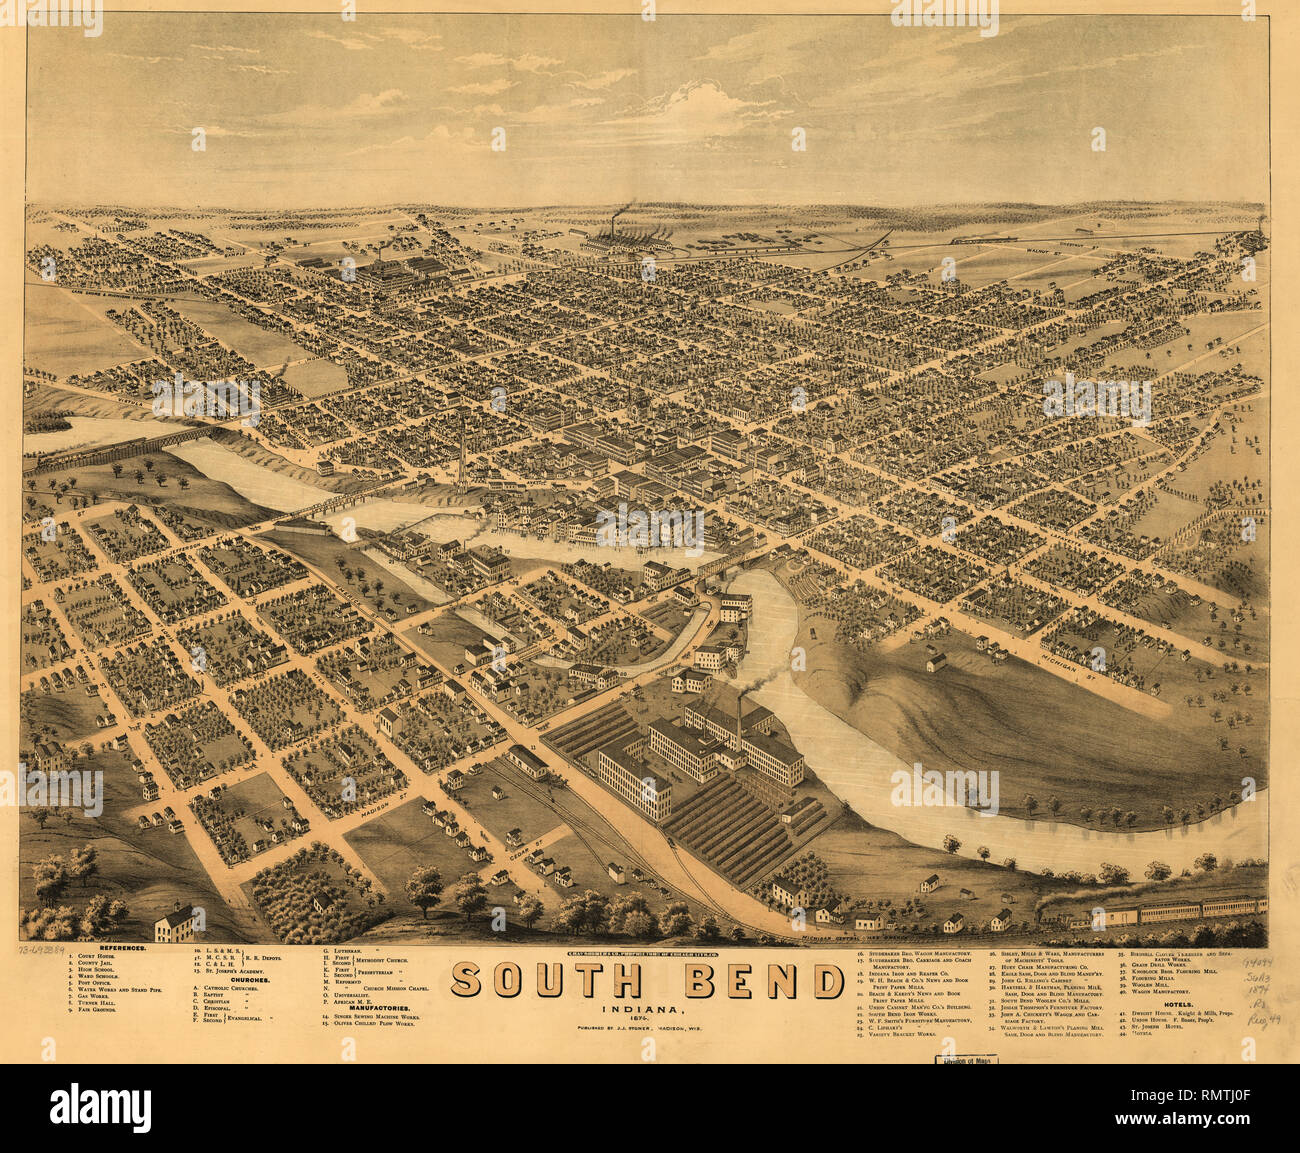 South Bend, Indiana, Chas. Shober & Co. Inhaber von Chicago Lith. Co., herausgegeben von J.J. Stoner, 1874 Stockfoto